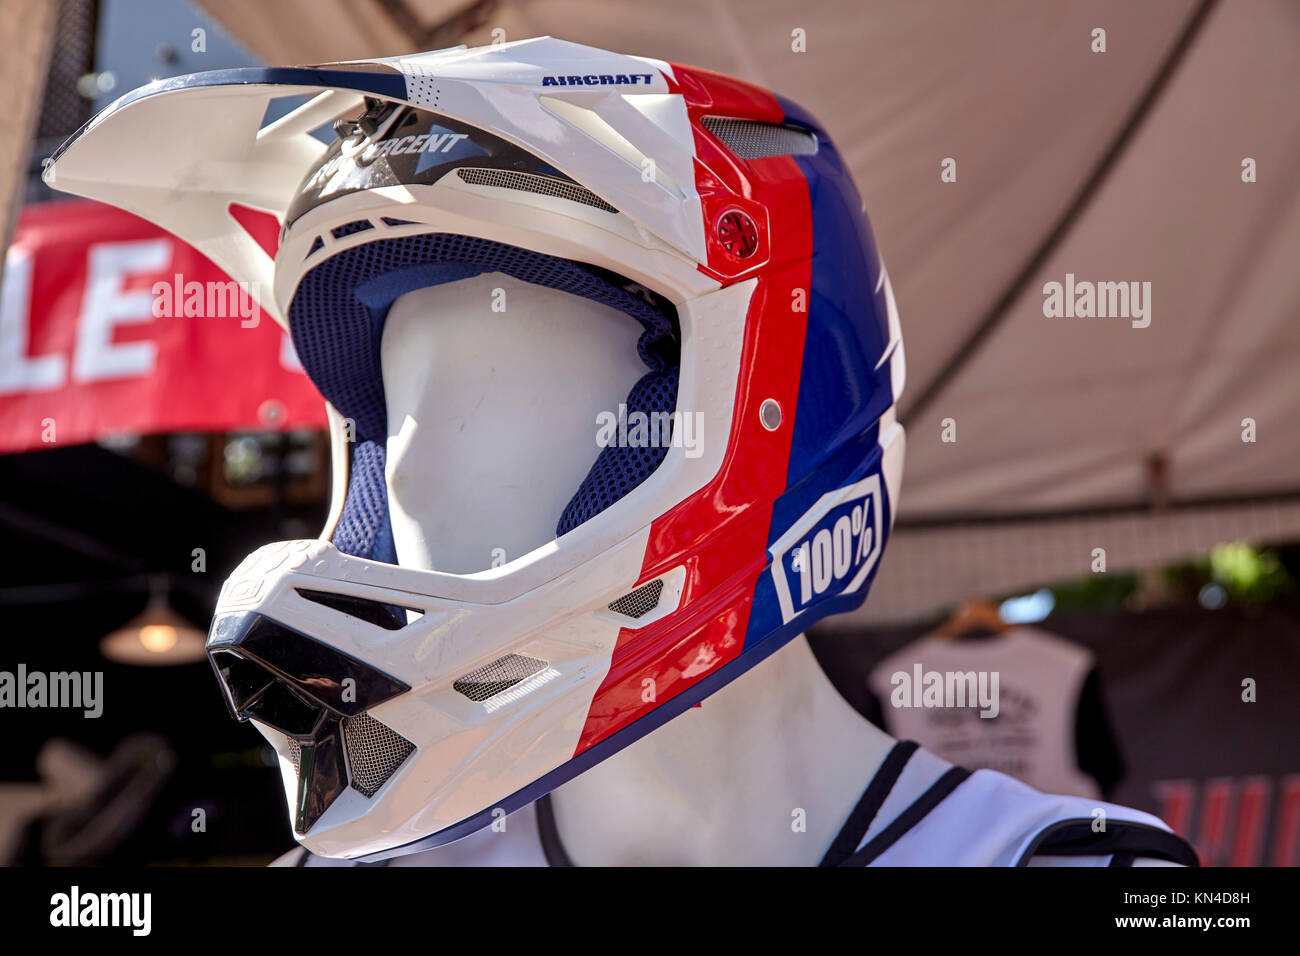 Casque de sécurité - protection de la tête entière pour jet ski, moto, moto ou rider Banque D'Images